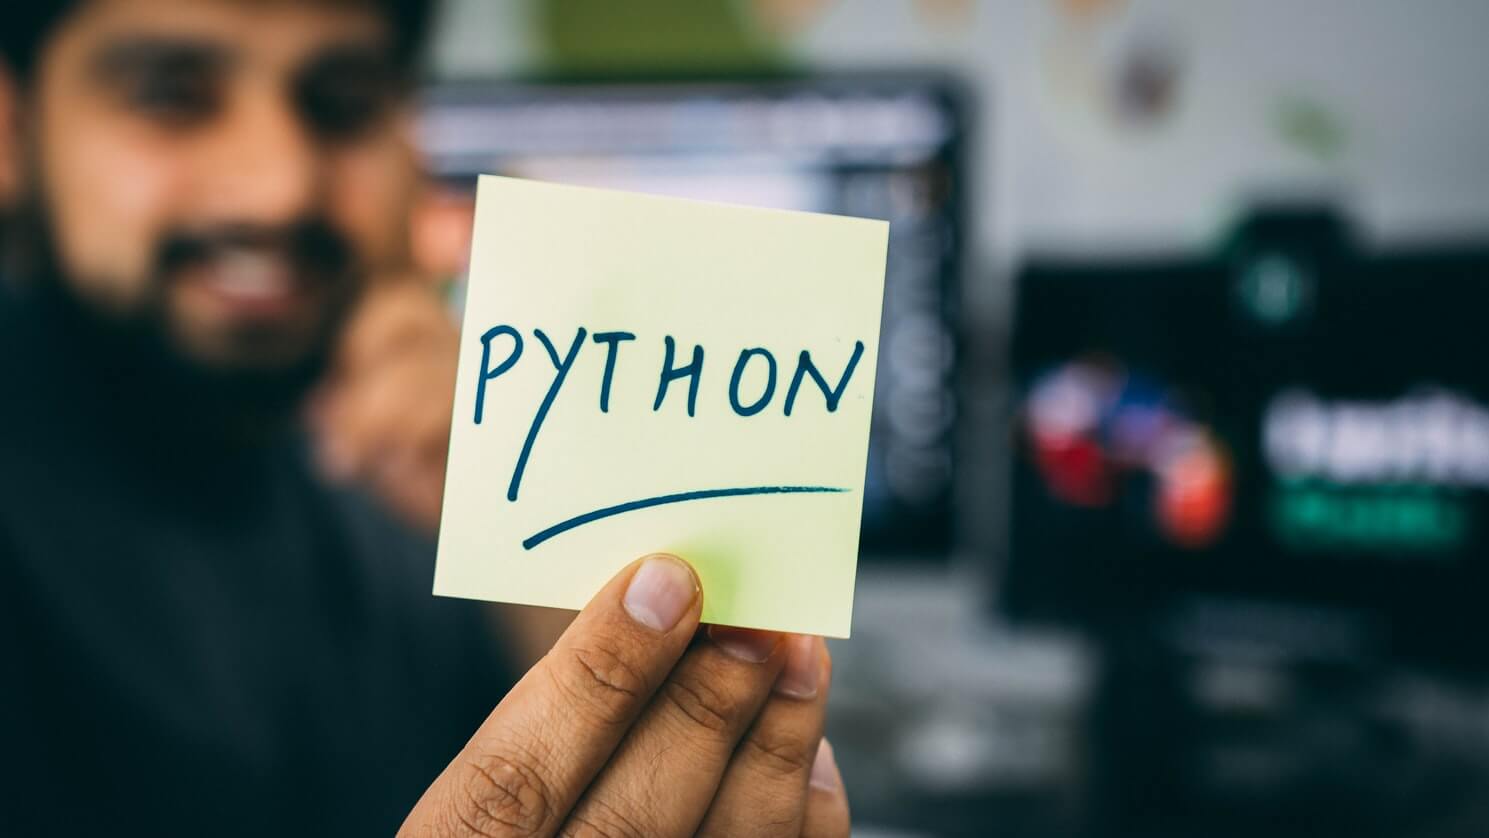 Разработка веб-приложений на Python